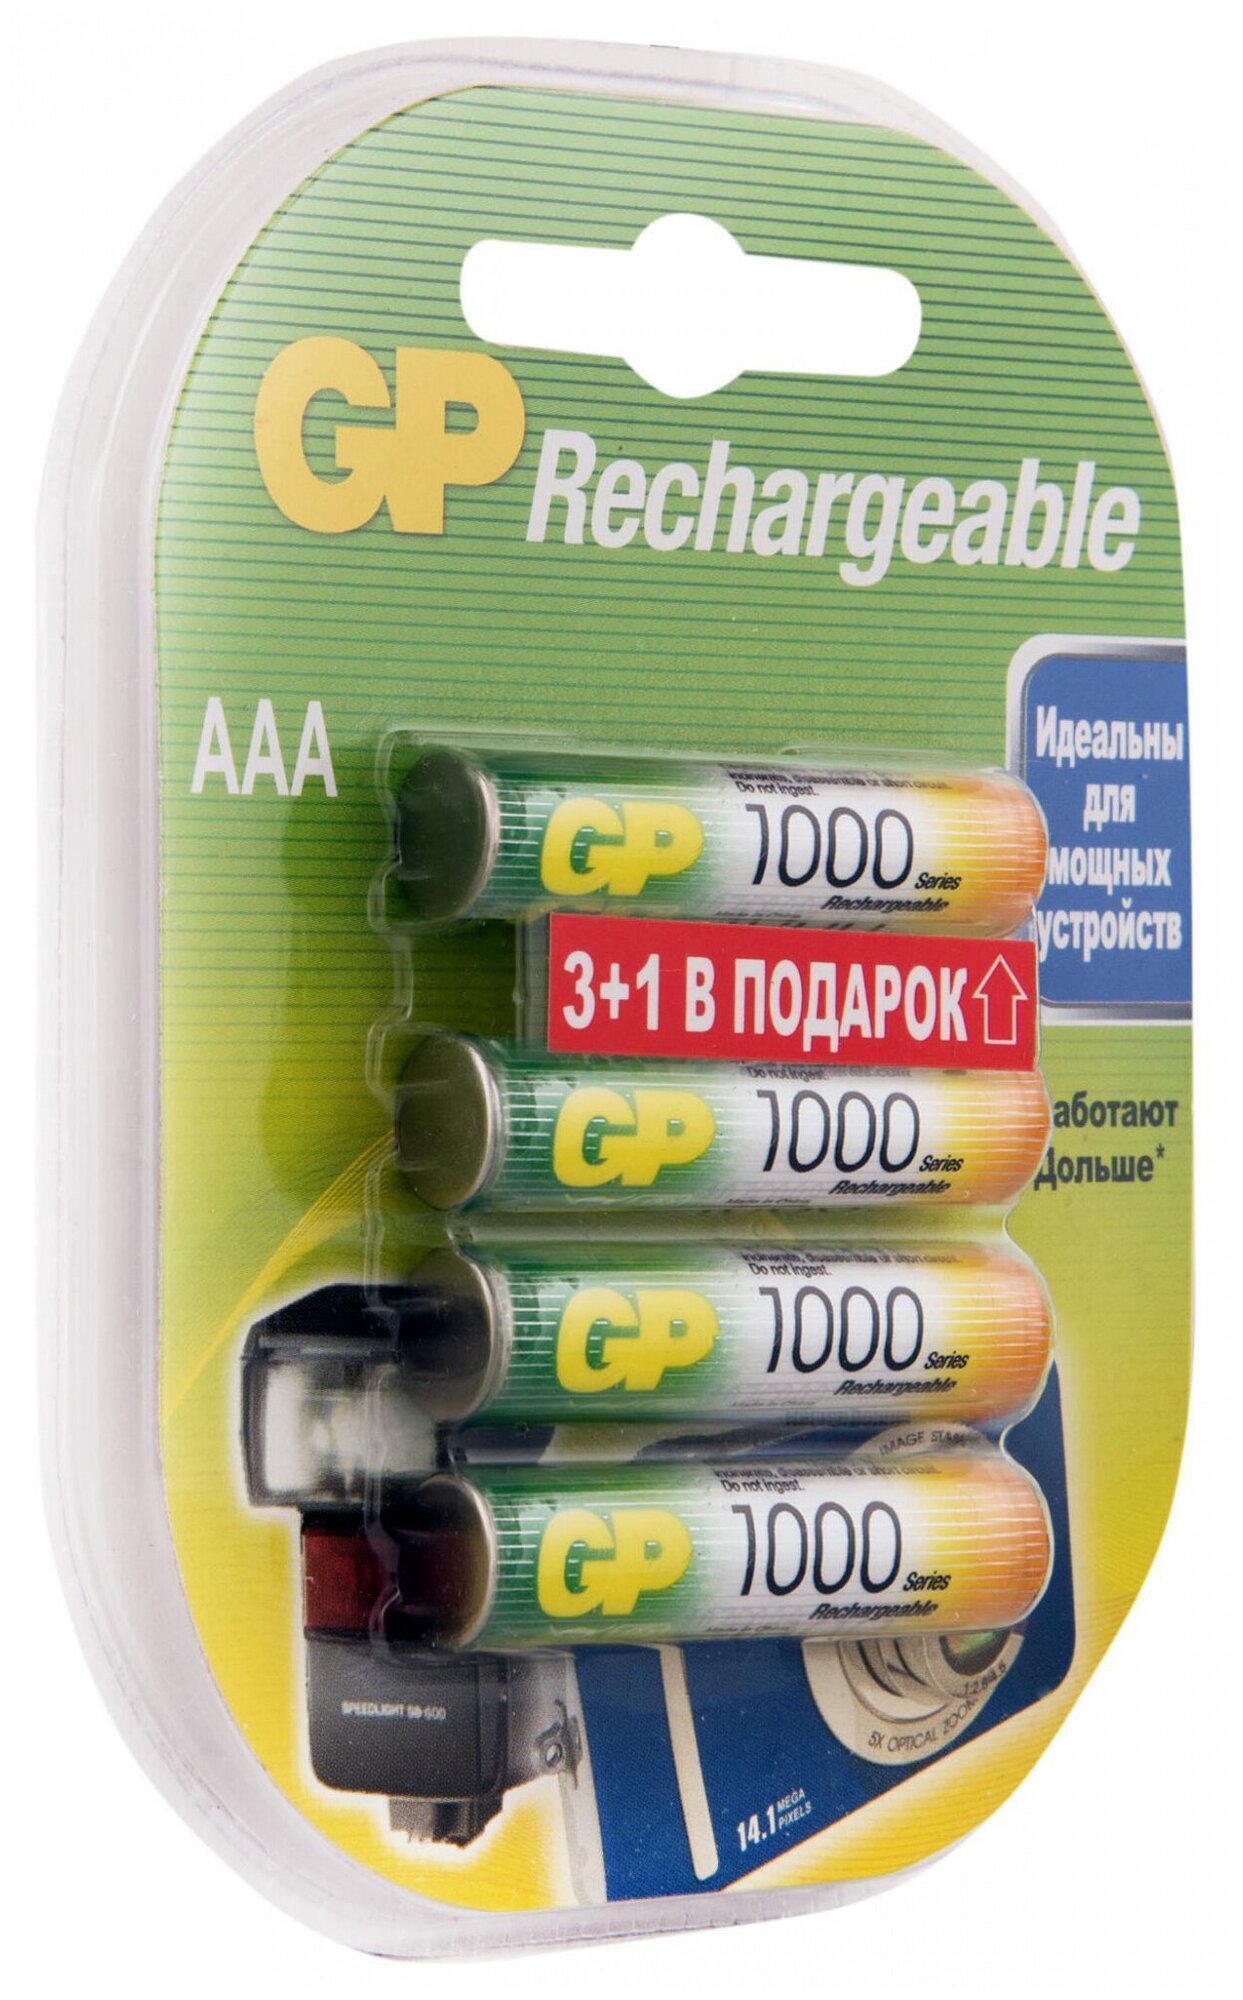 AAA Аккумулятор GP Rechargeable 1000AAAHC, 6 шт. 1000мAч - фото №12